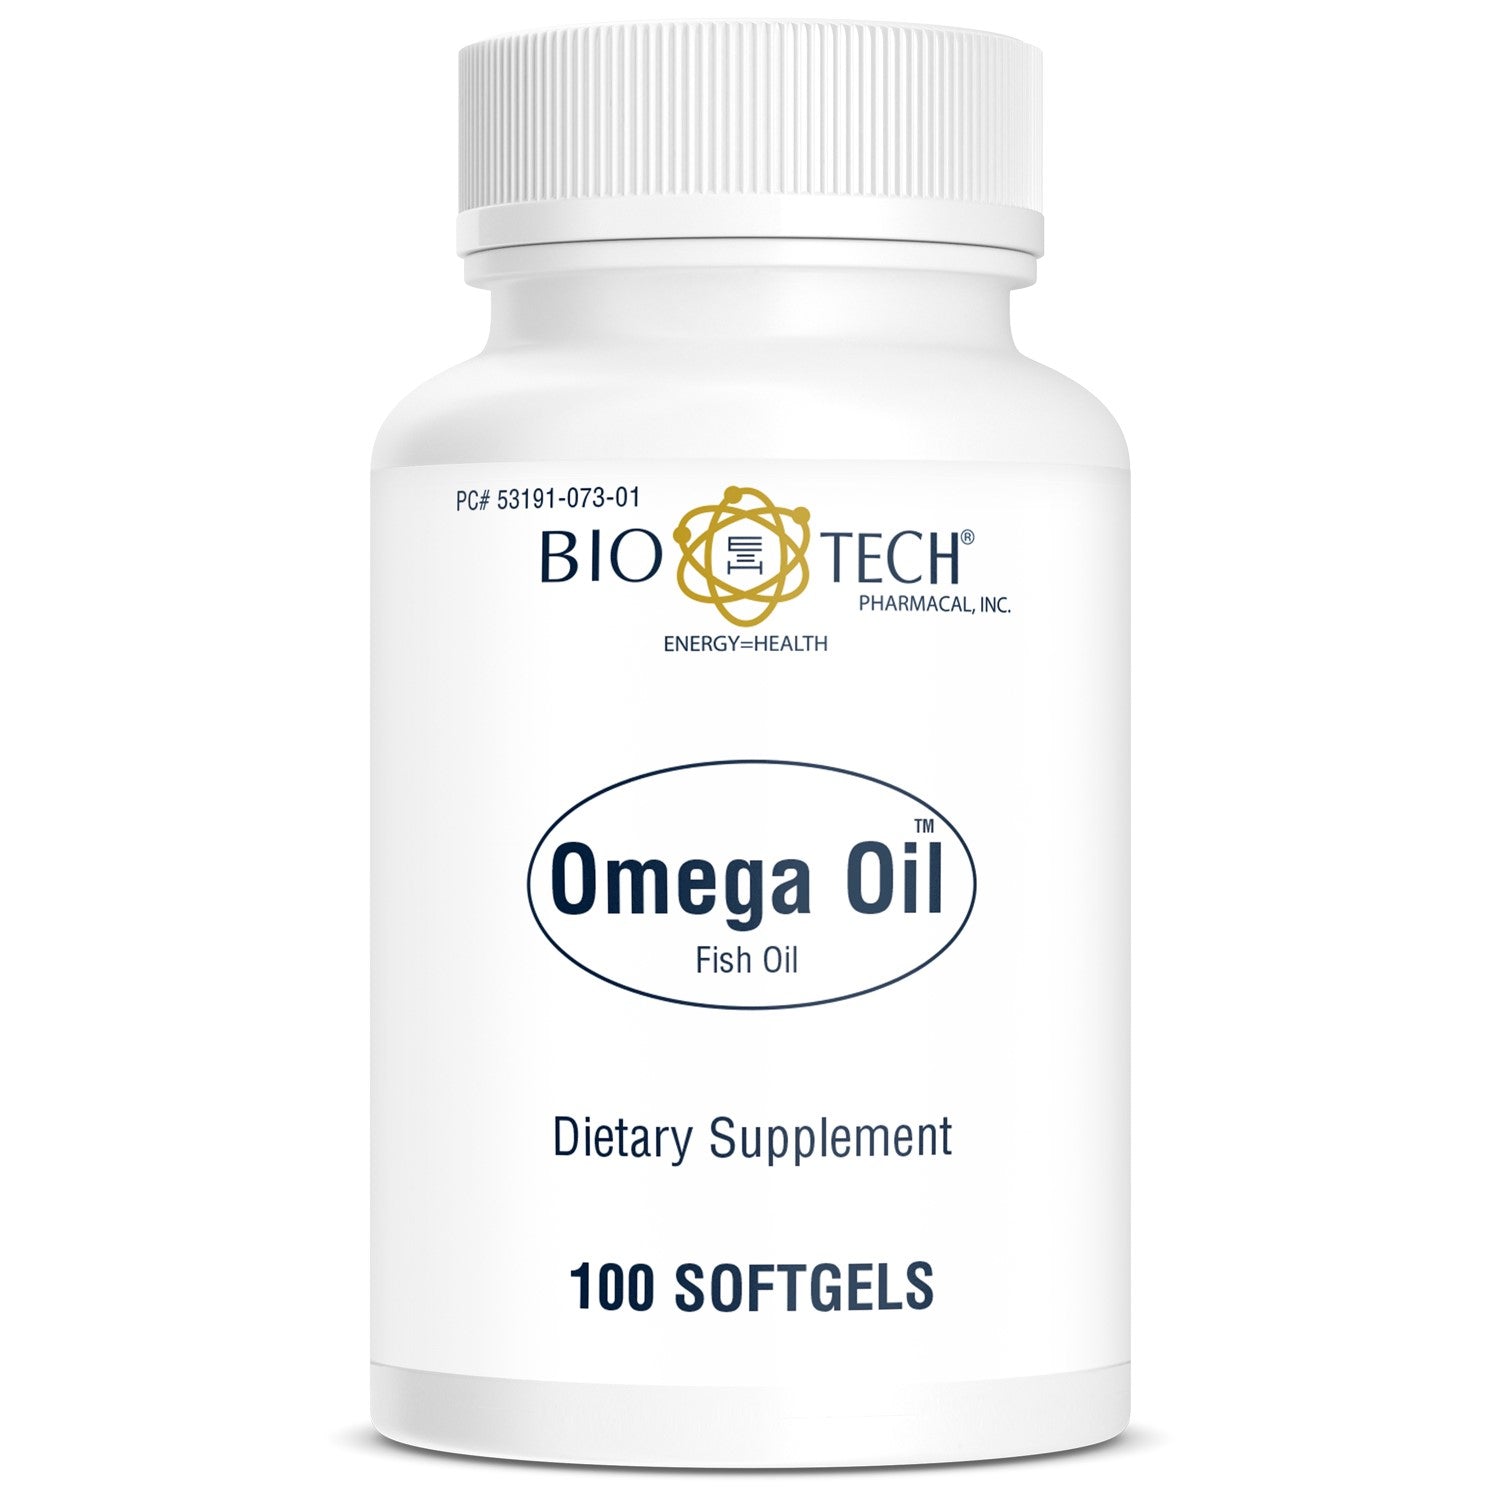 Omega Oil (fish oil)  Omega-3 Fatty Acid – Bio-Tech Pharmacal